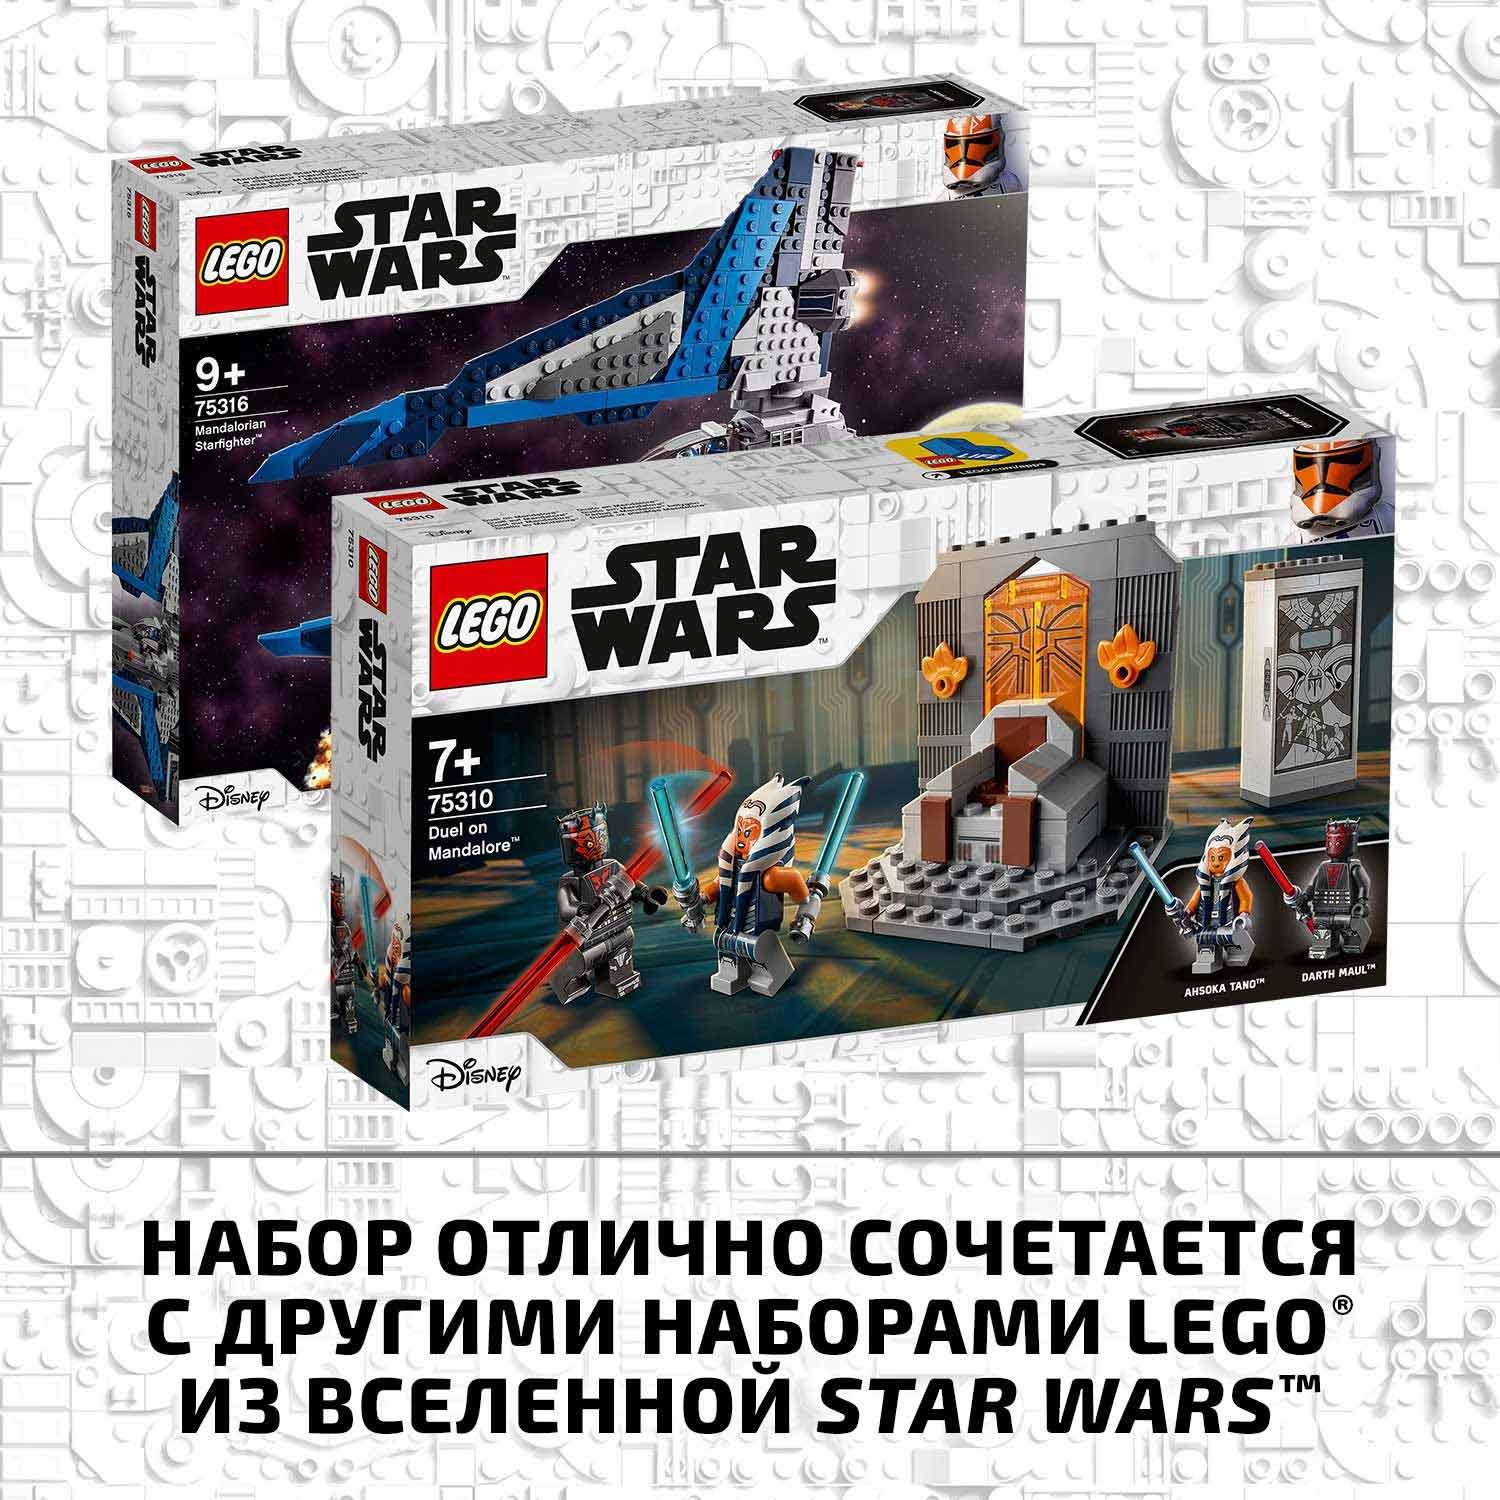 Конструктор LEGO Star Wars Дуэль на Мандалоре 75310 - фото 8